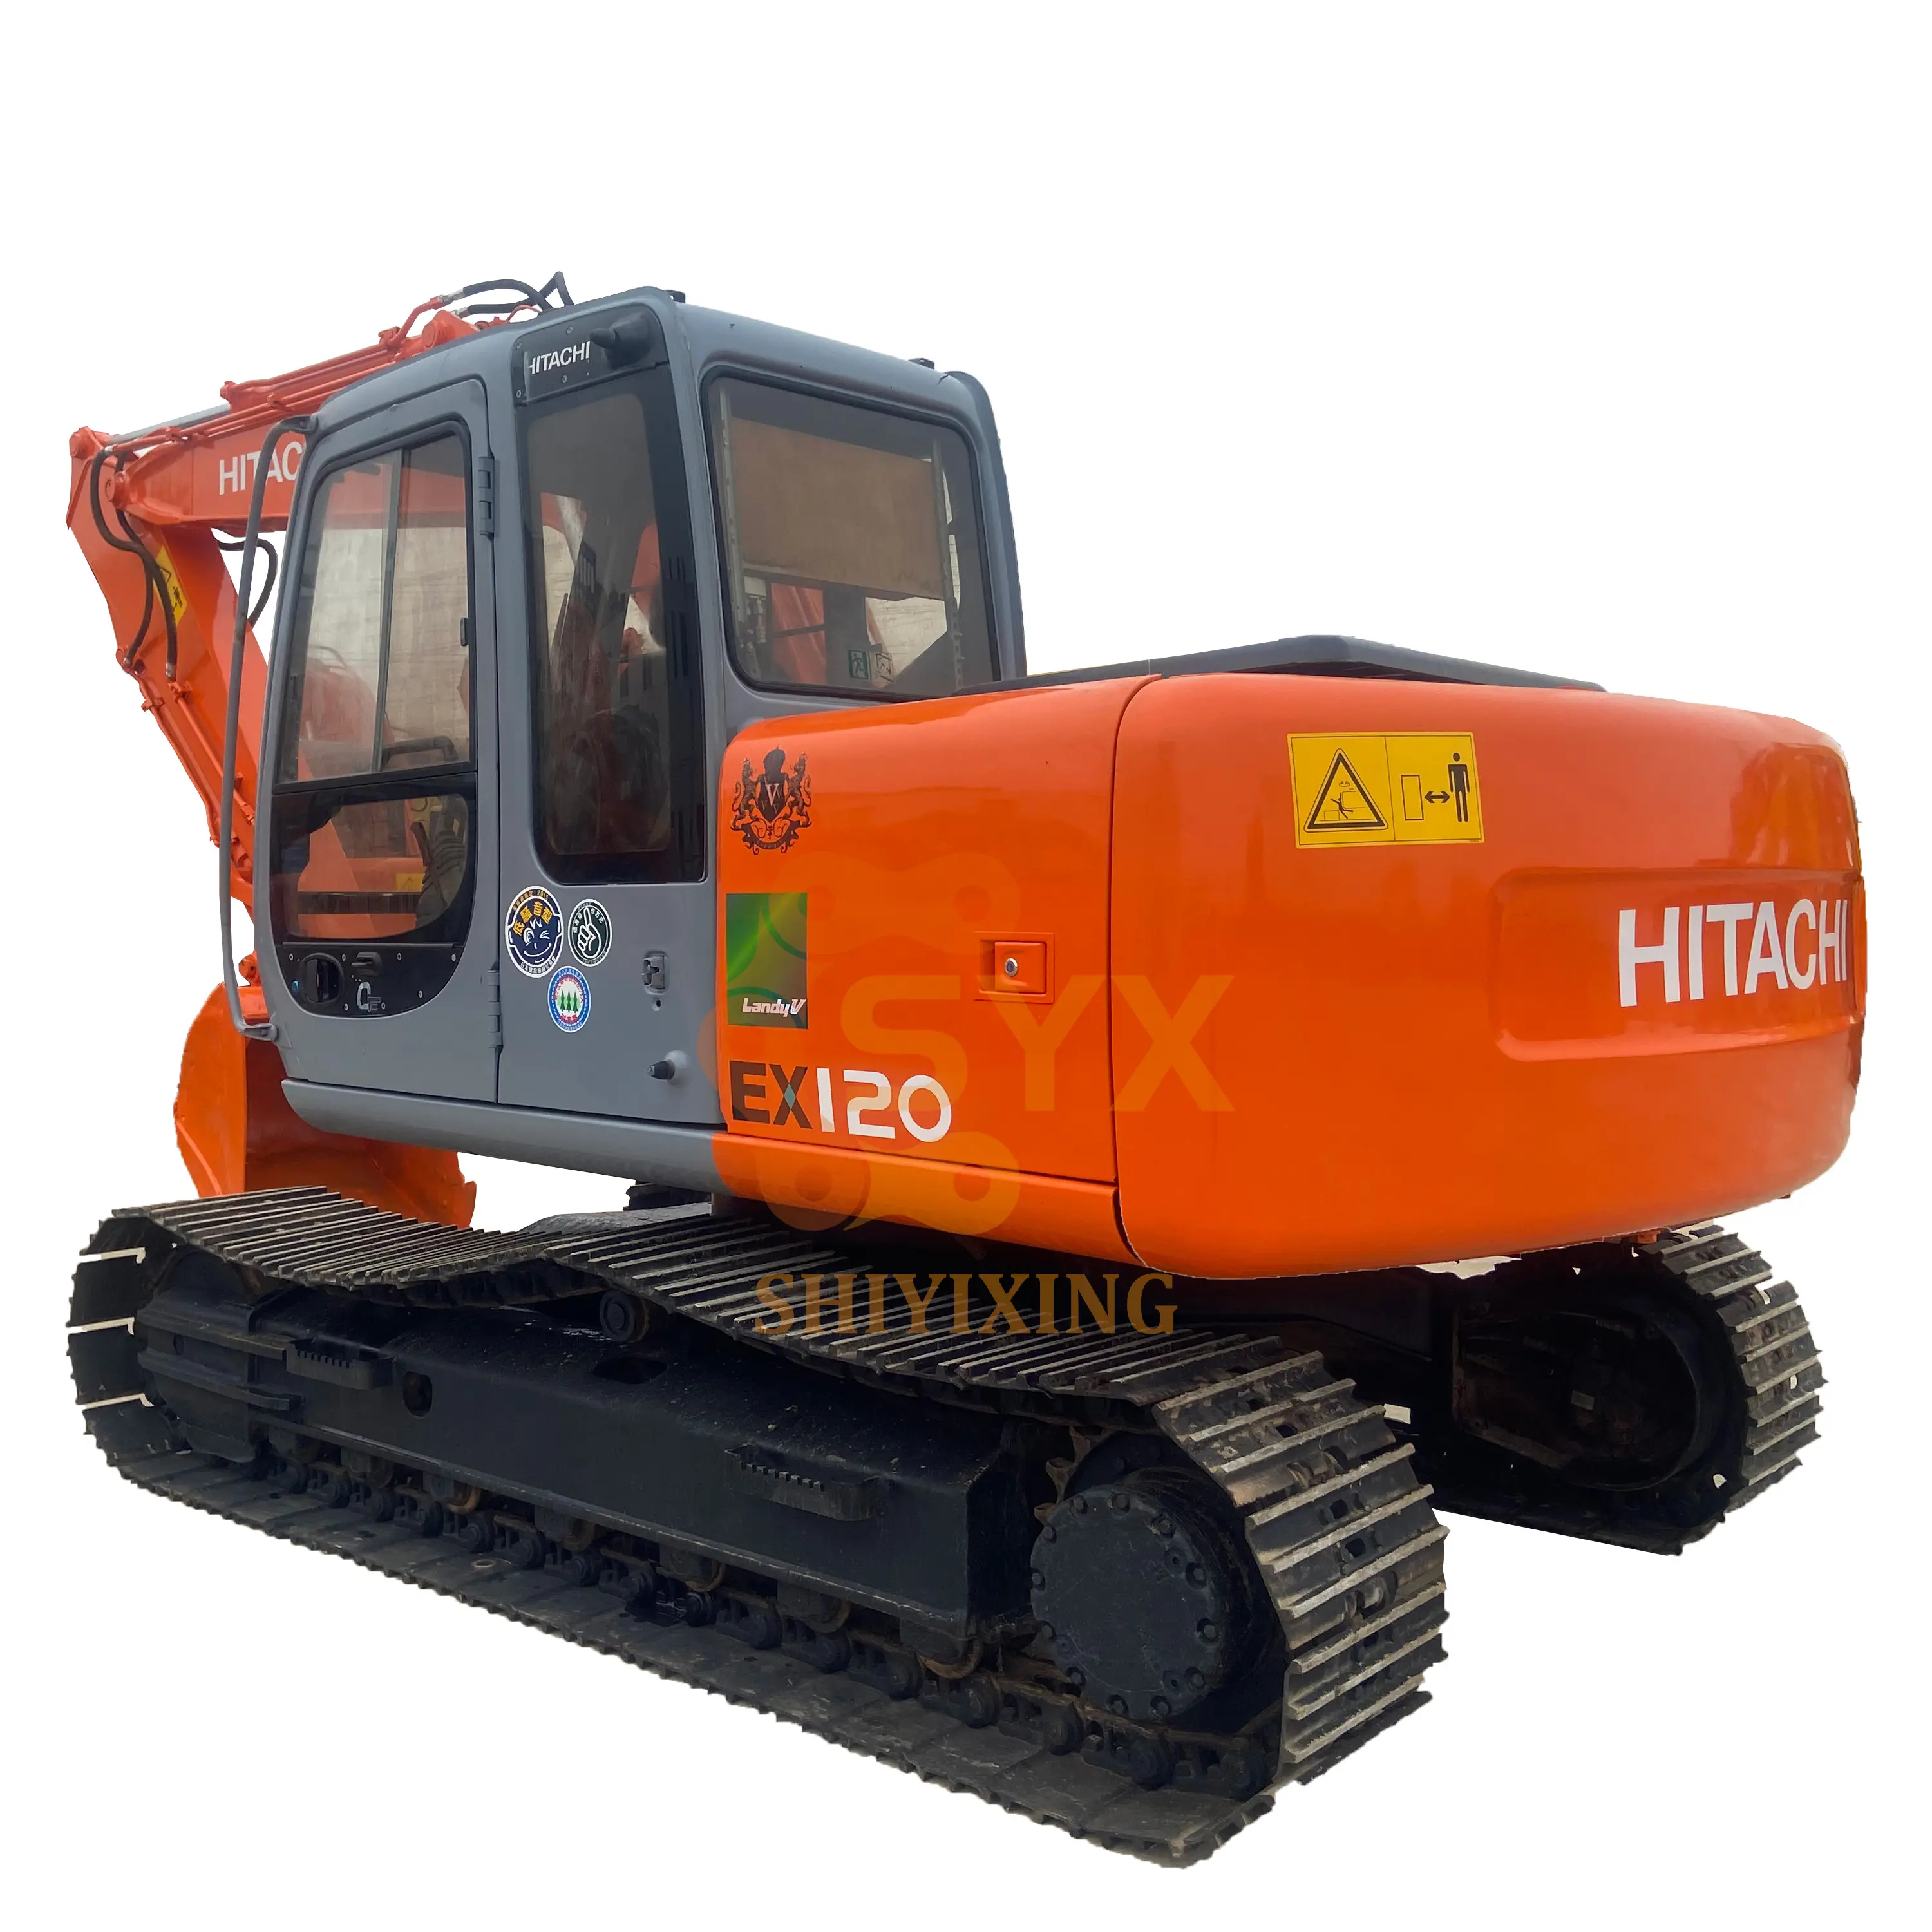 Escavadeira Hitachi ex120-5 de 12 toneladas para venda máquina escavadeira de esteira ex120 usada em condições de funcionamento ex120 zx120